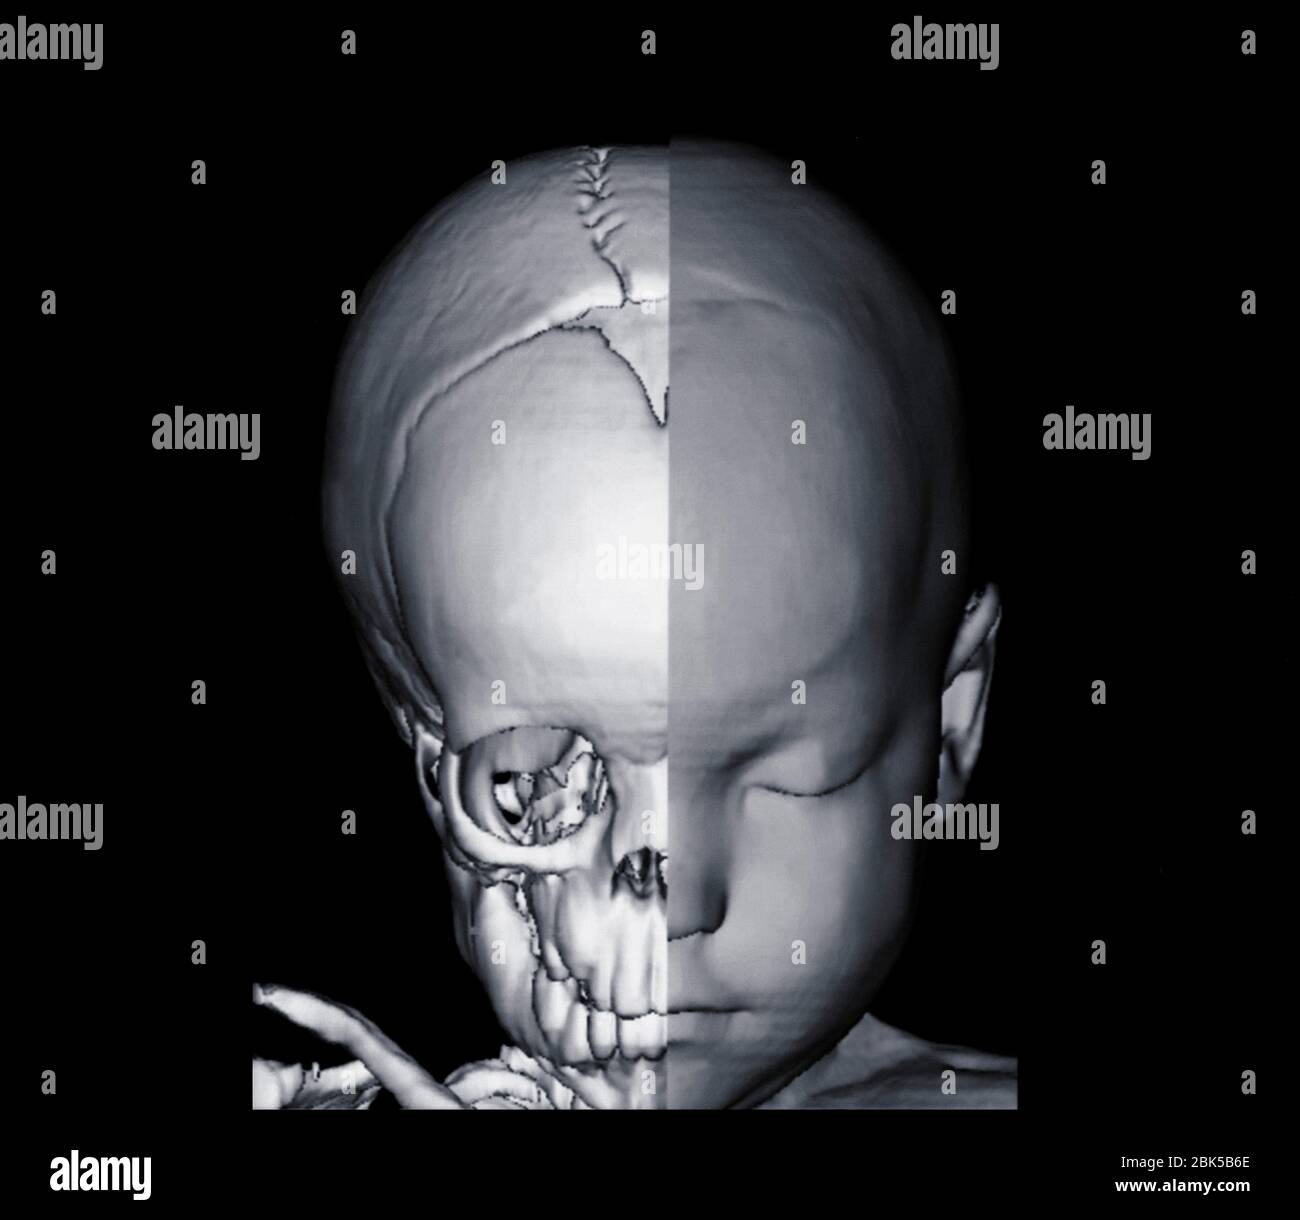 Image de la tête et du demi-crâne du bébé, tomodensitométrie (TDM). Banque D'Images